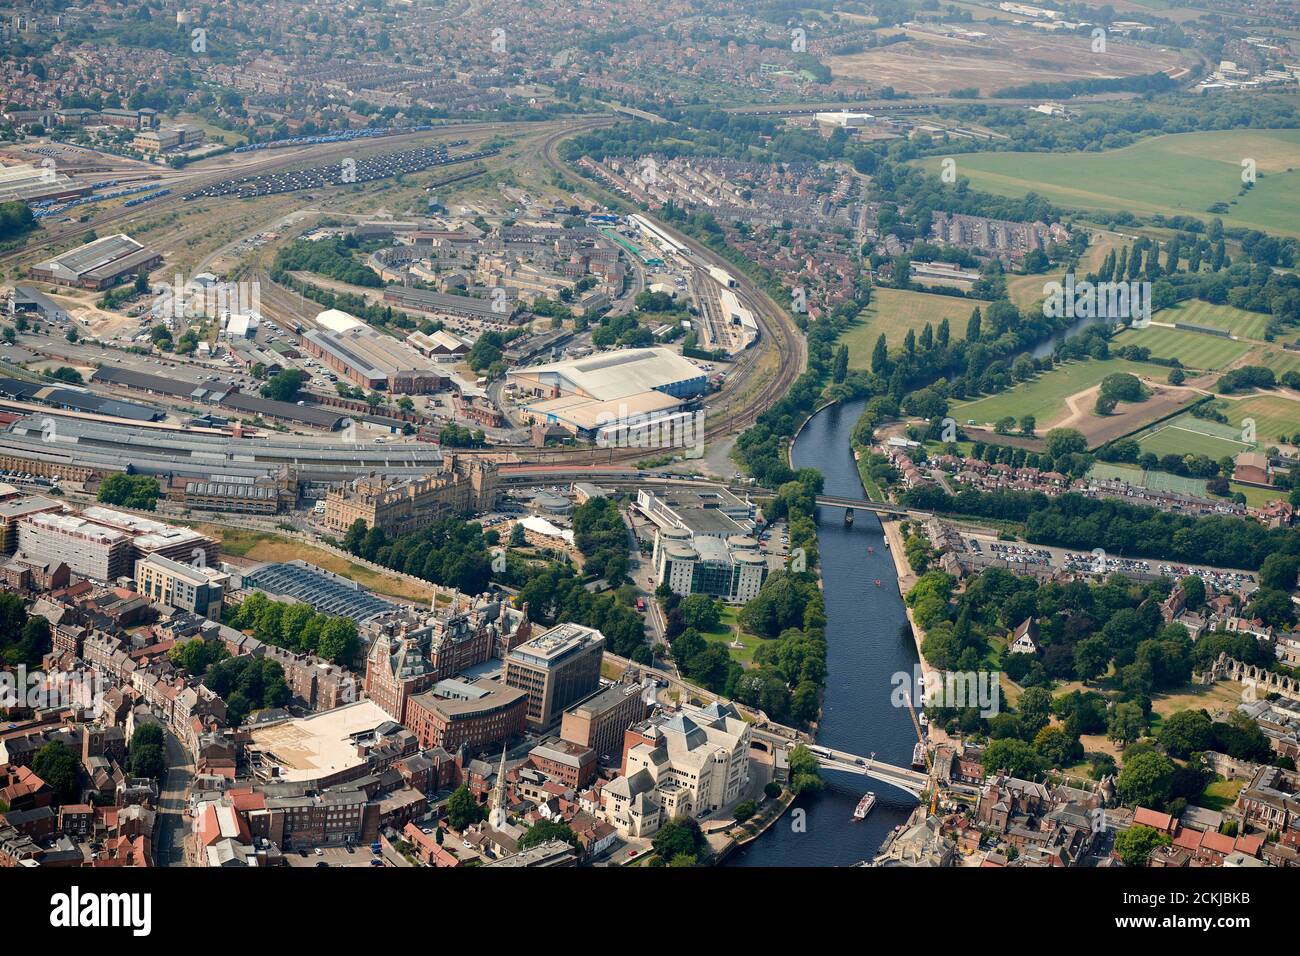 Une vue aérienne de la ville de York, du North Yorkshire, du nord de l'Angleterre, Royaume-Uni montrant la gare et la zone de développement derrière Banque D'Images